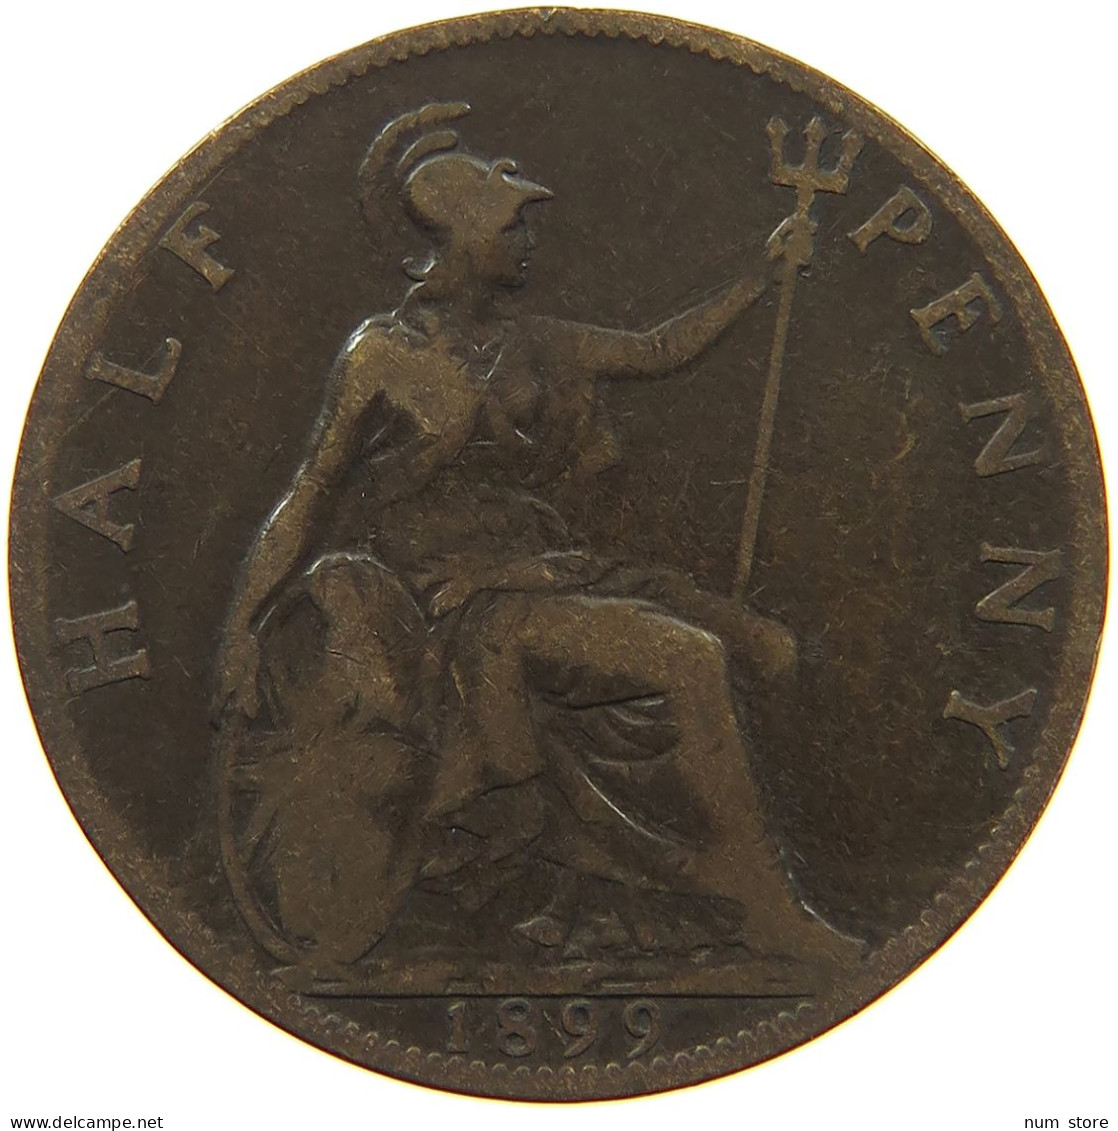 GREAT BRITAIN HALF PENNY 1899 #s001 0277 - C. 1/2 Penny